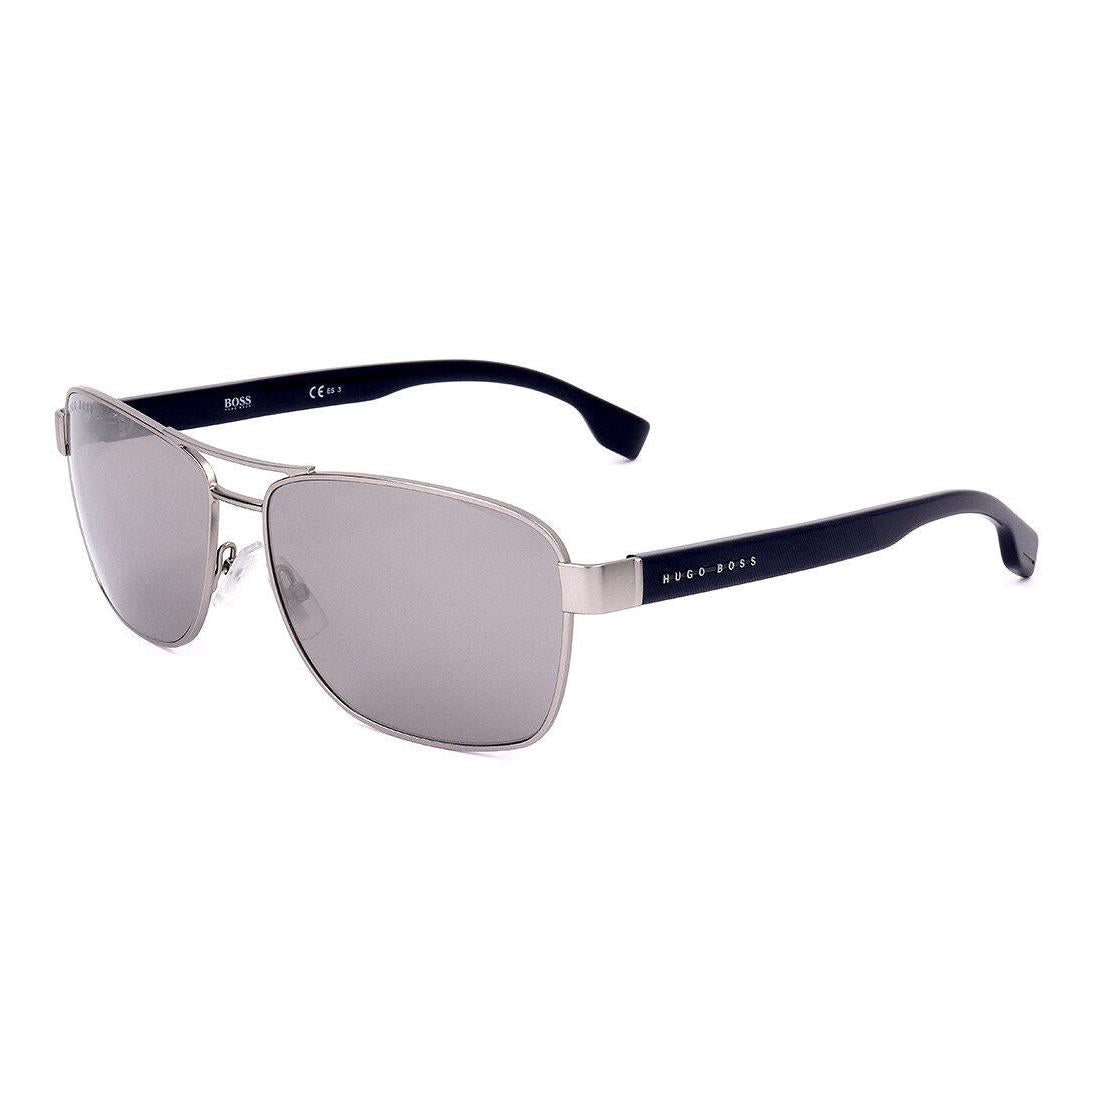 Men's Hugo Boss Sunglasses BOSS 1240/S 9T9 – shadesoptics.com